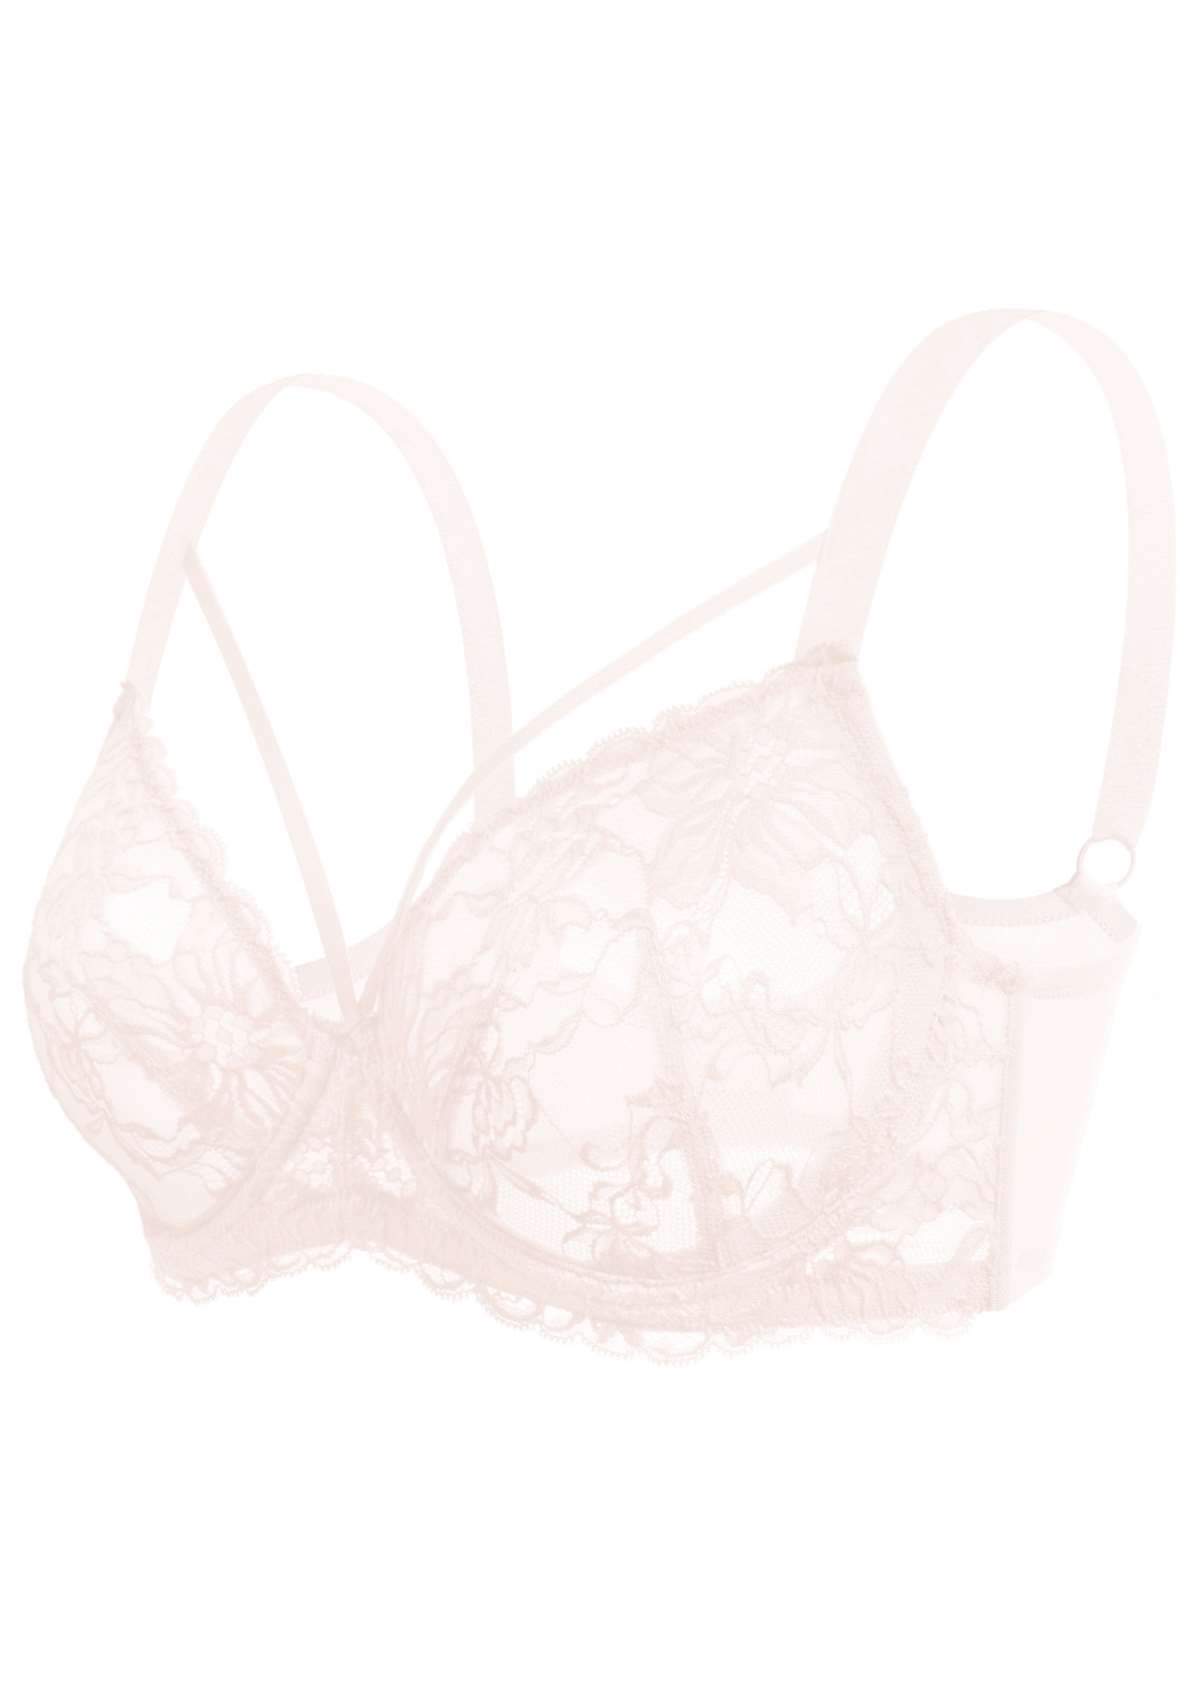 HSIA Pretty In Petals Underwire Lace Bra: No Padding, Full Cup Bra - Dusty Peach / 34 / DDD/F